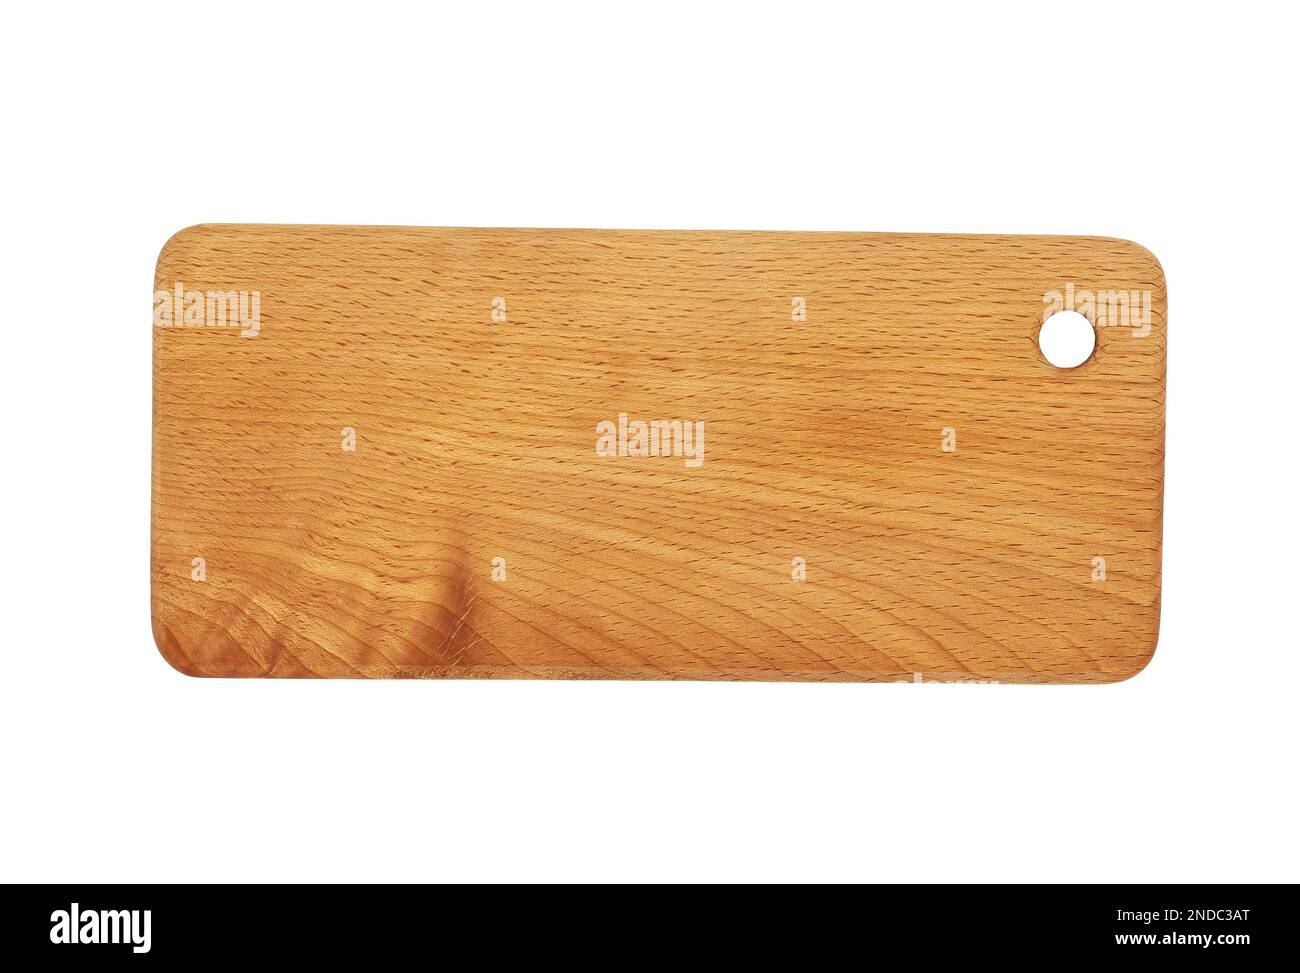 Image d'une planche à découper en bois massif de forme rectangulaire isolée sur fond blanc Banque D'Images